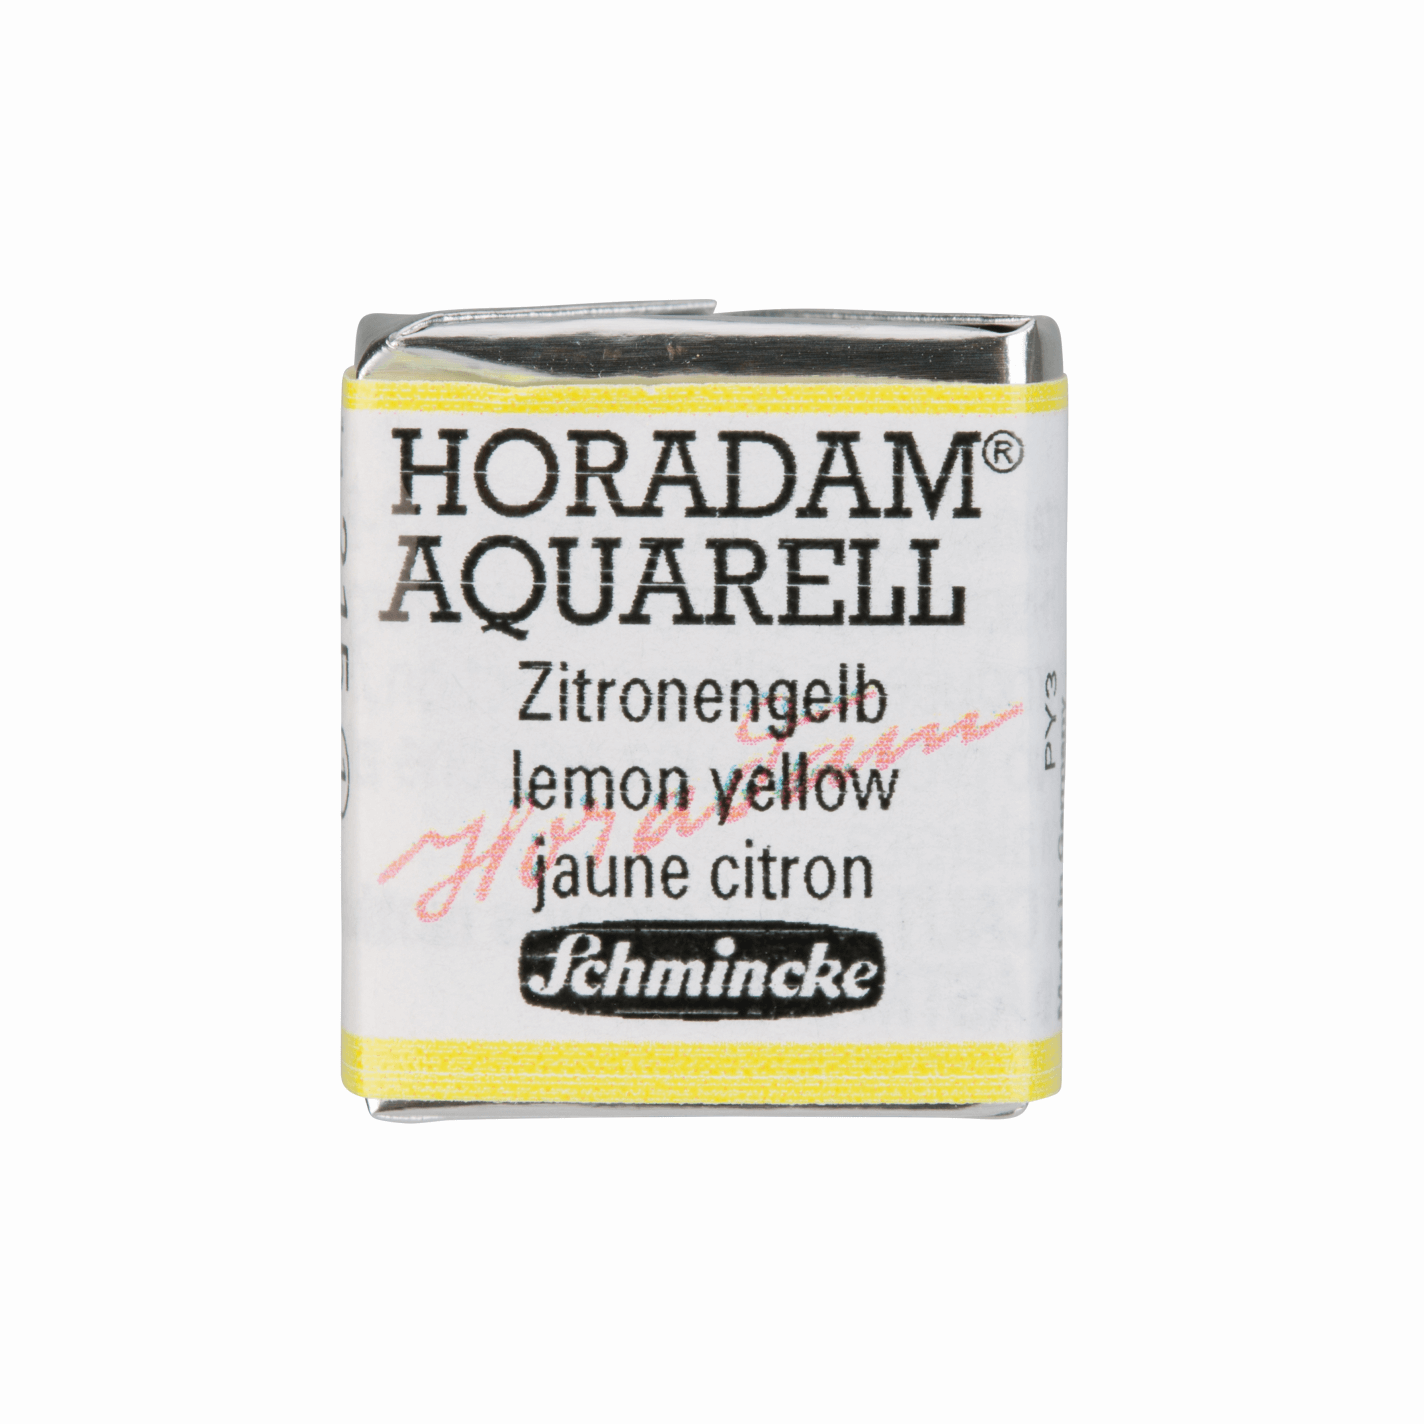 Schmincke Horadam Aquarell pans 1/2 pan Lemon Yellow